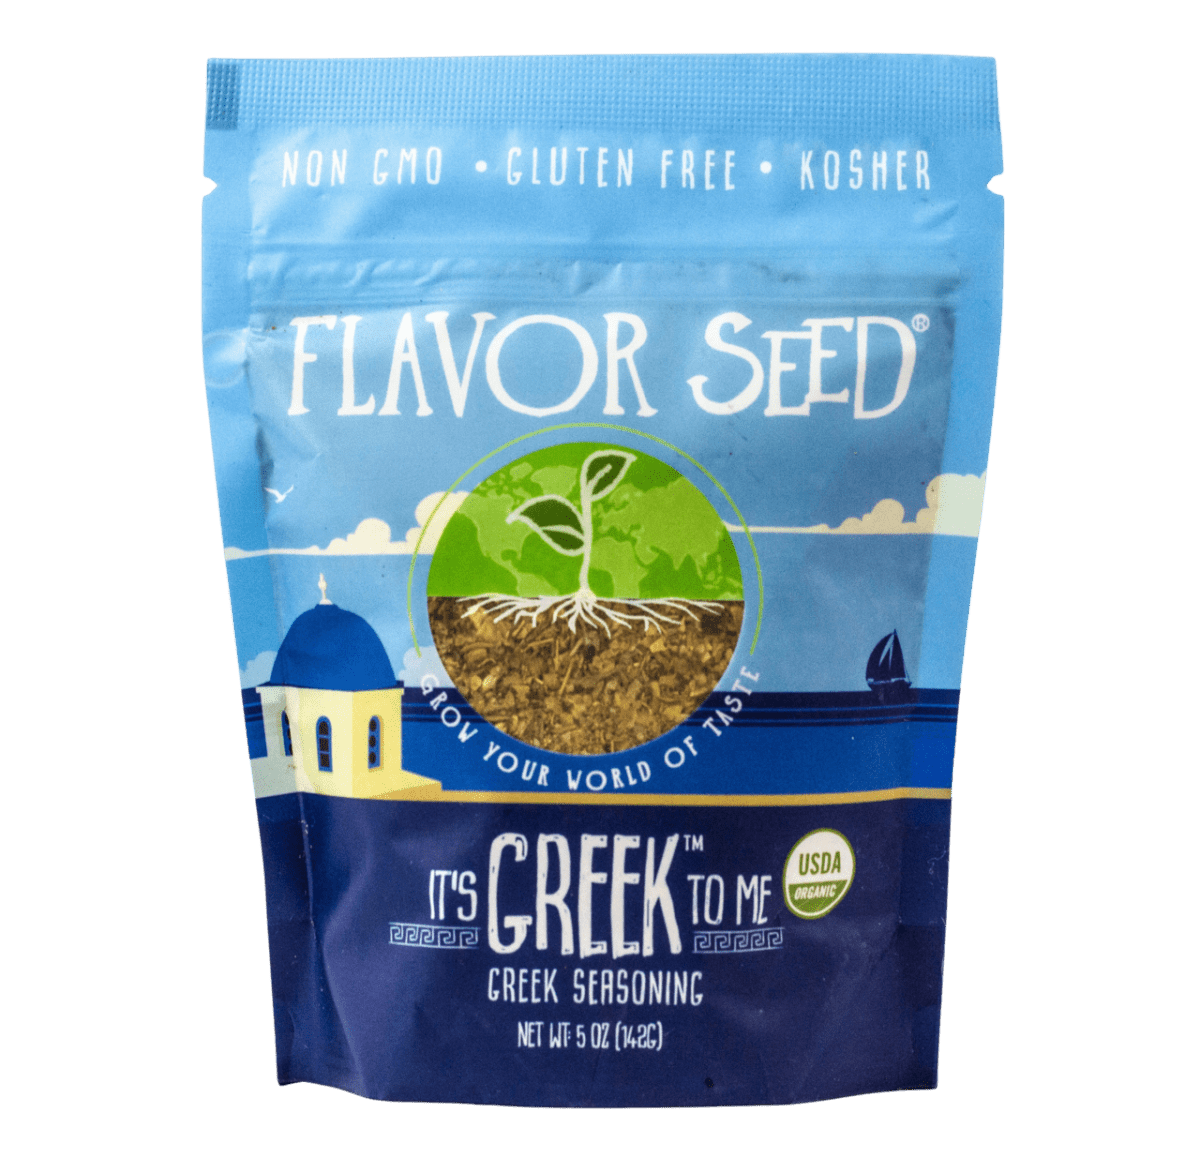 FLAVOR SEED - It's Greek To Me Organic Greek Seasoning - Flavor Seed